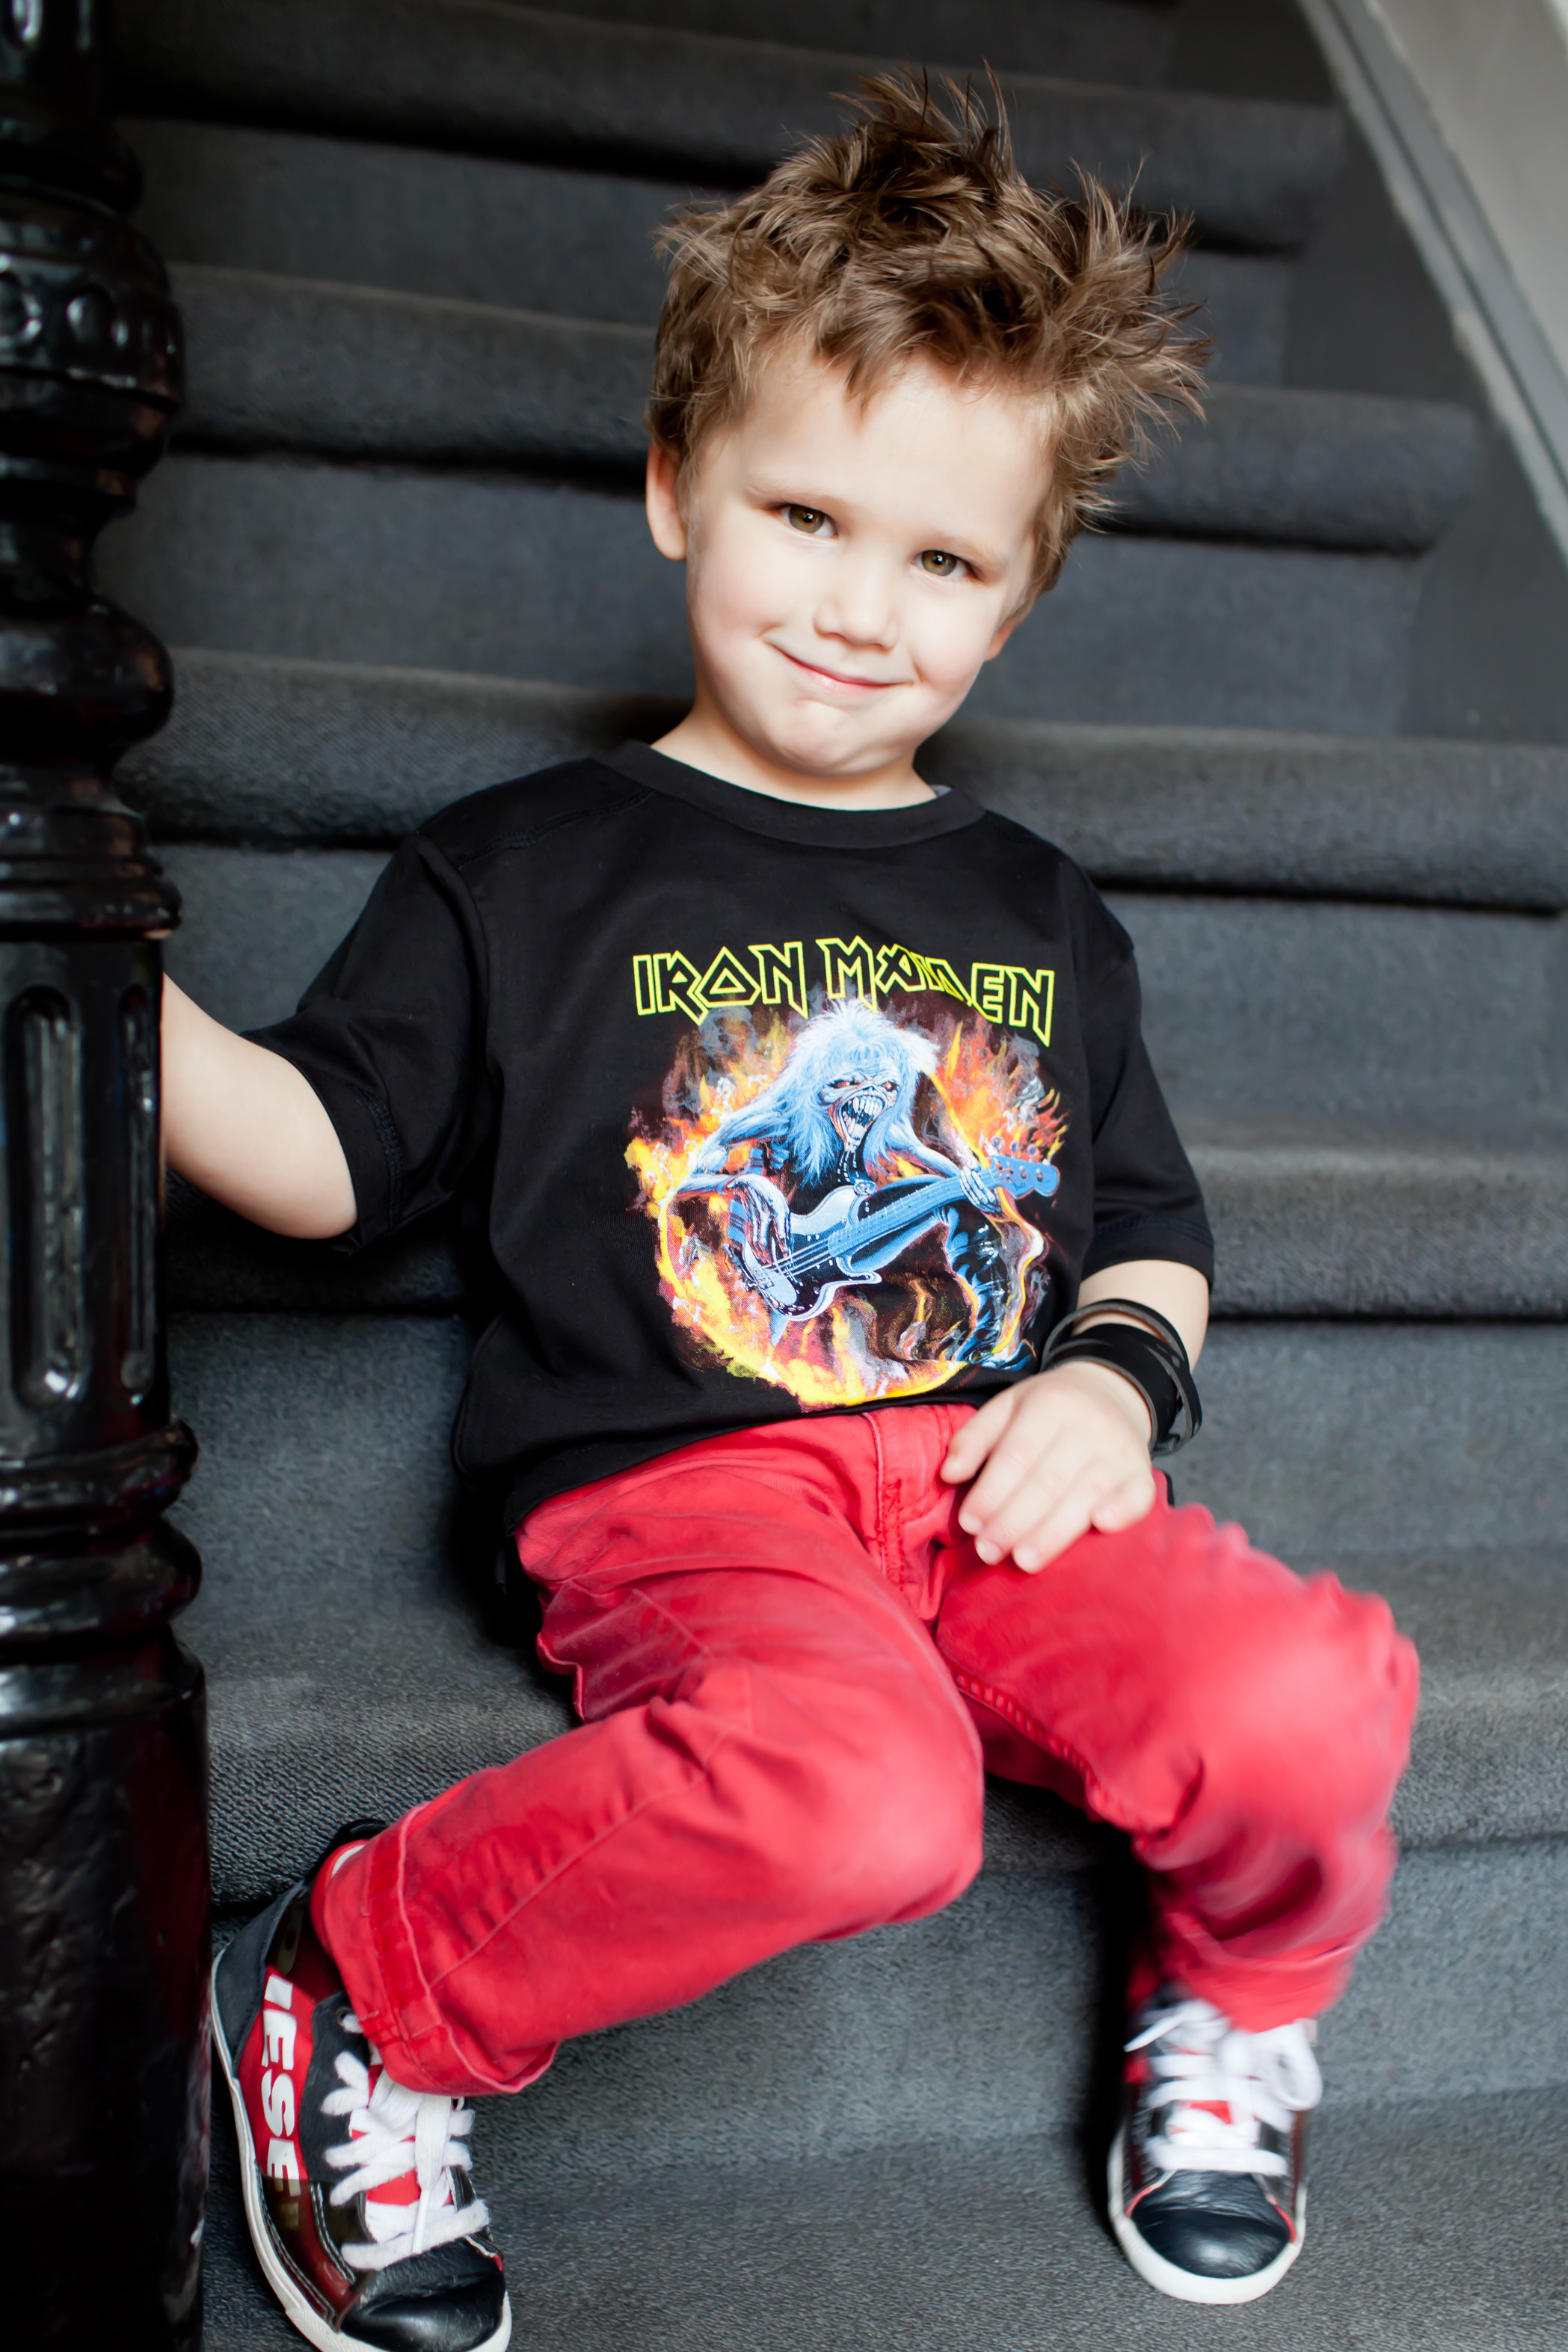 Iron Maiden Kinder T-shirt FLF 